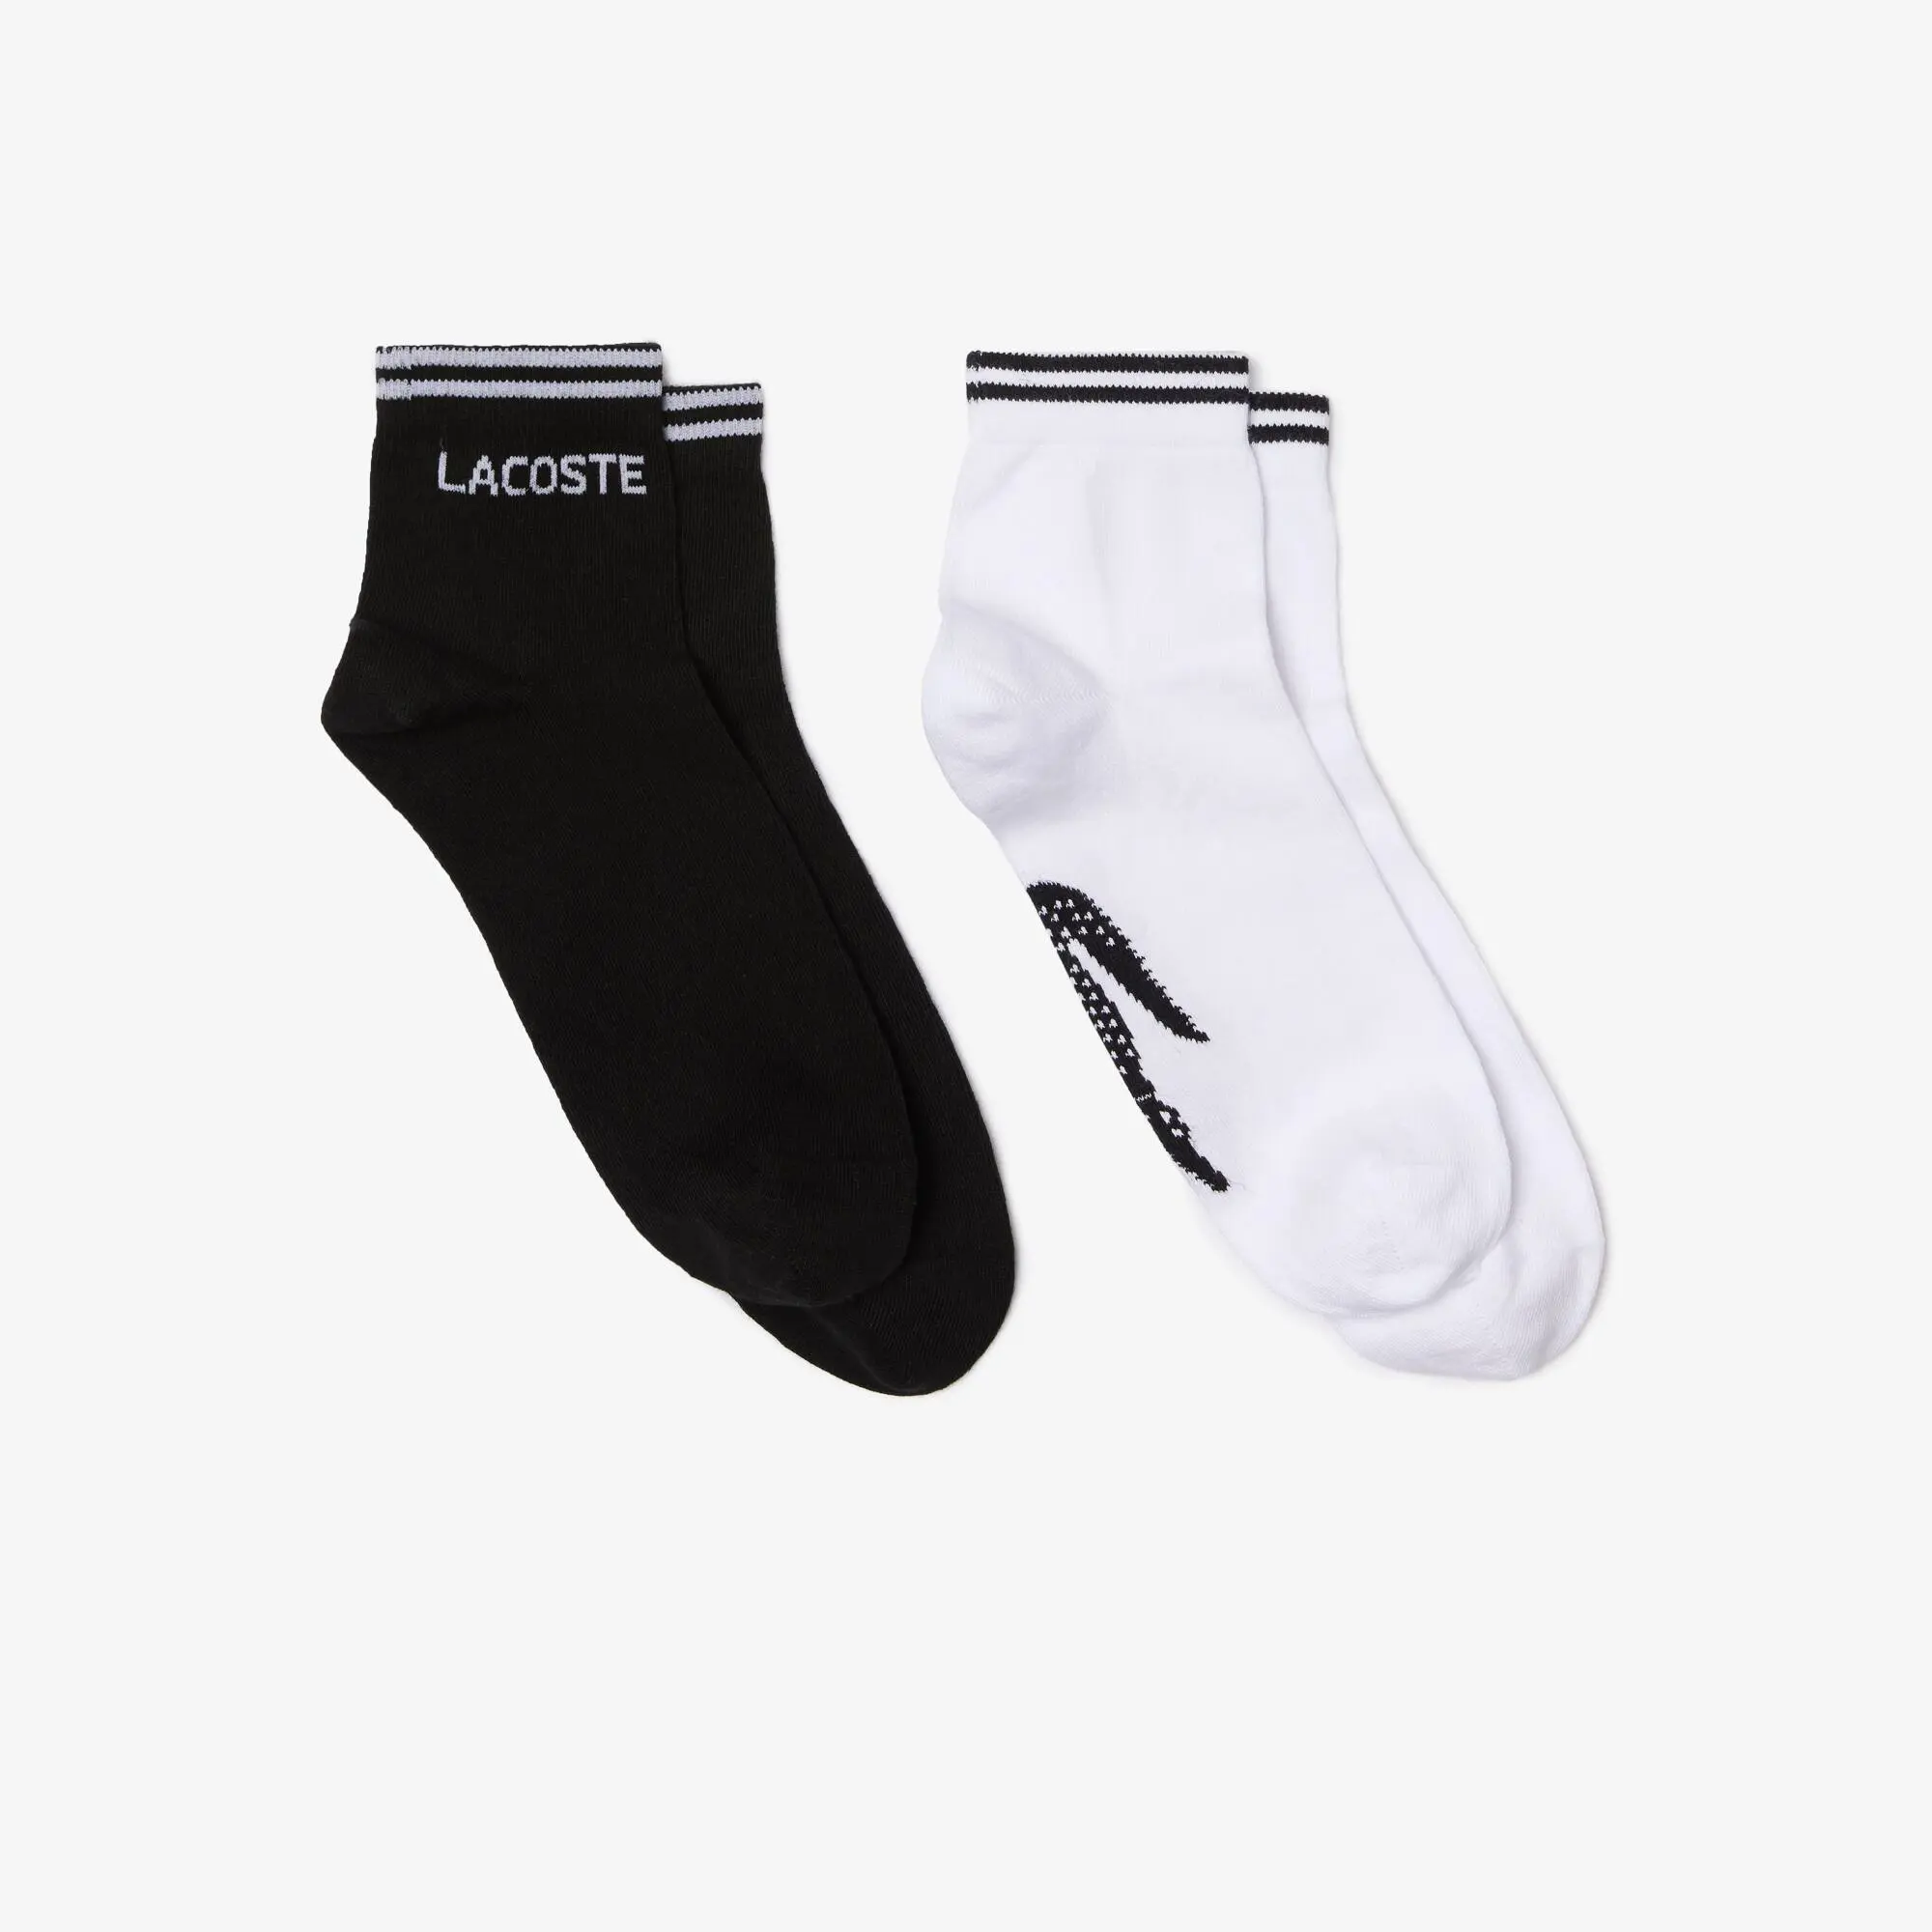 Lacoste Pack de 2 pares de calcetines de hombre Lacoste SPORT de corte bajo en algodón. 1